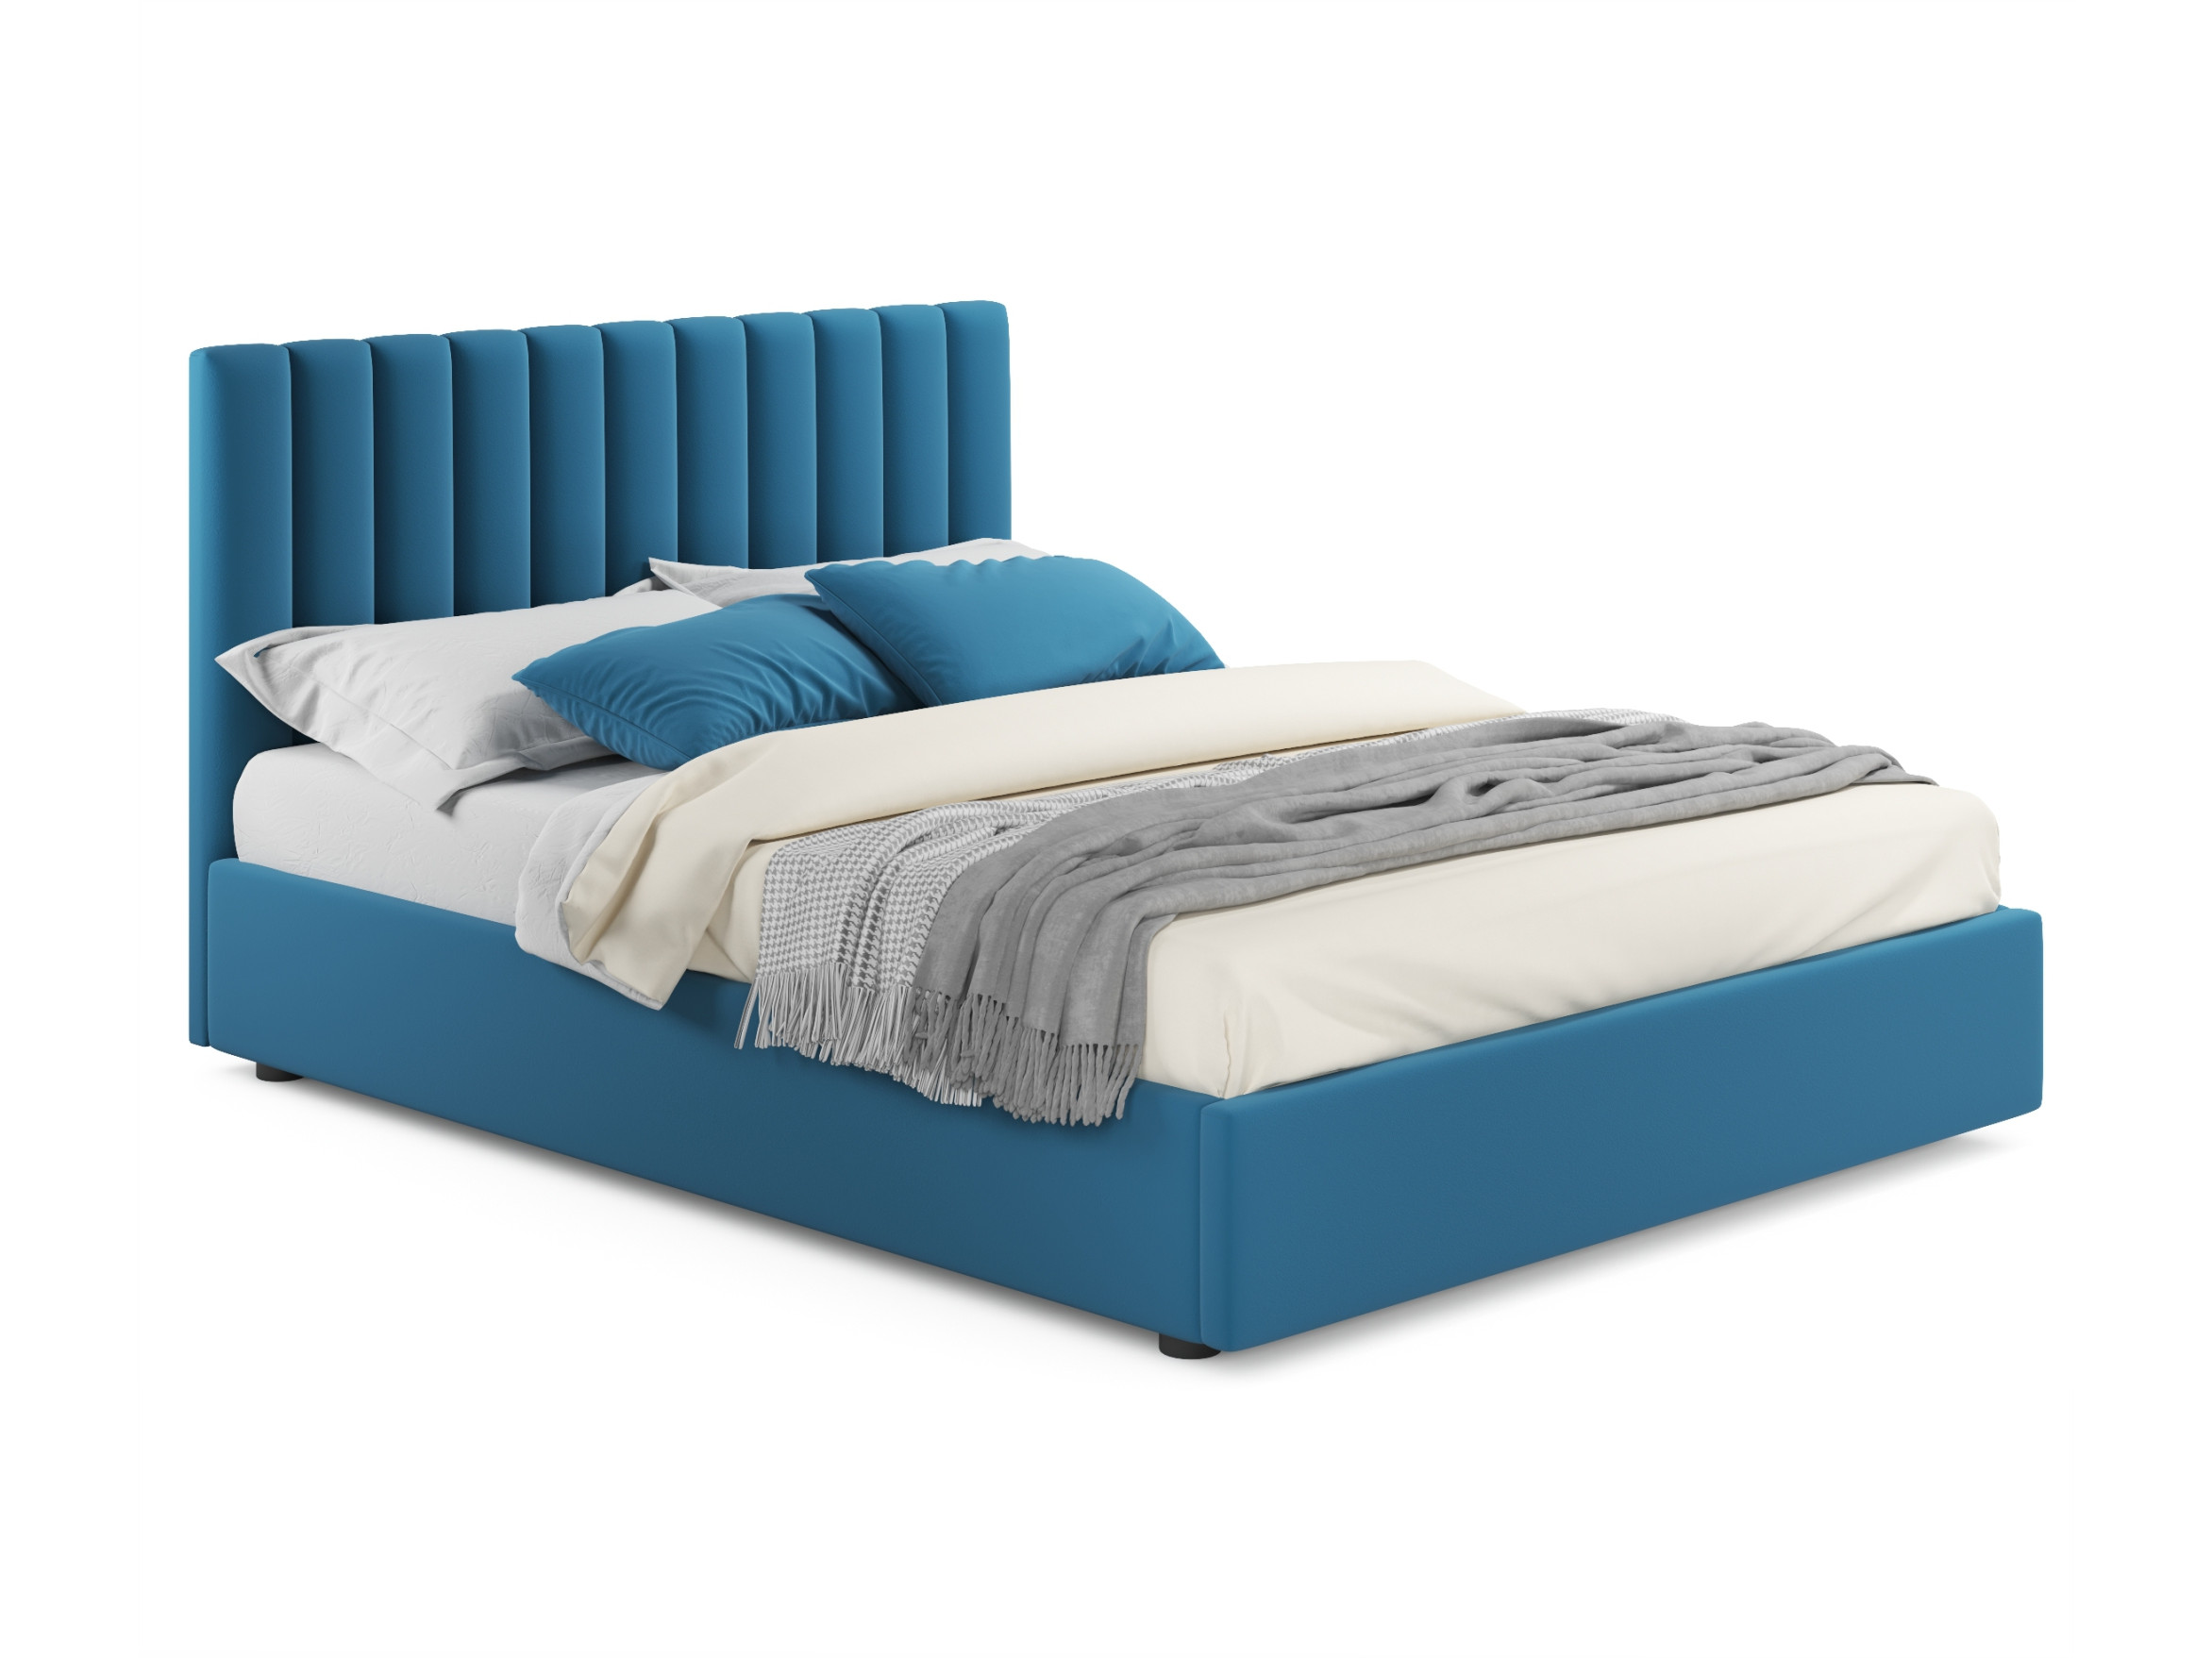 мягкая кровать olivia 1800 синяя с подъемным механизмом синий синий велюр дсп Мягкая кровать Olivia 1400 синяя с подъемным механизмом синий, Синий, Велюр, ДСП